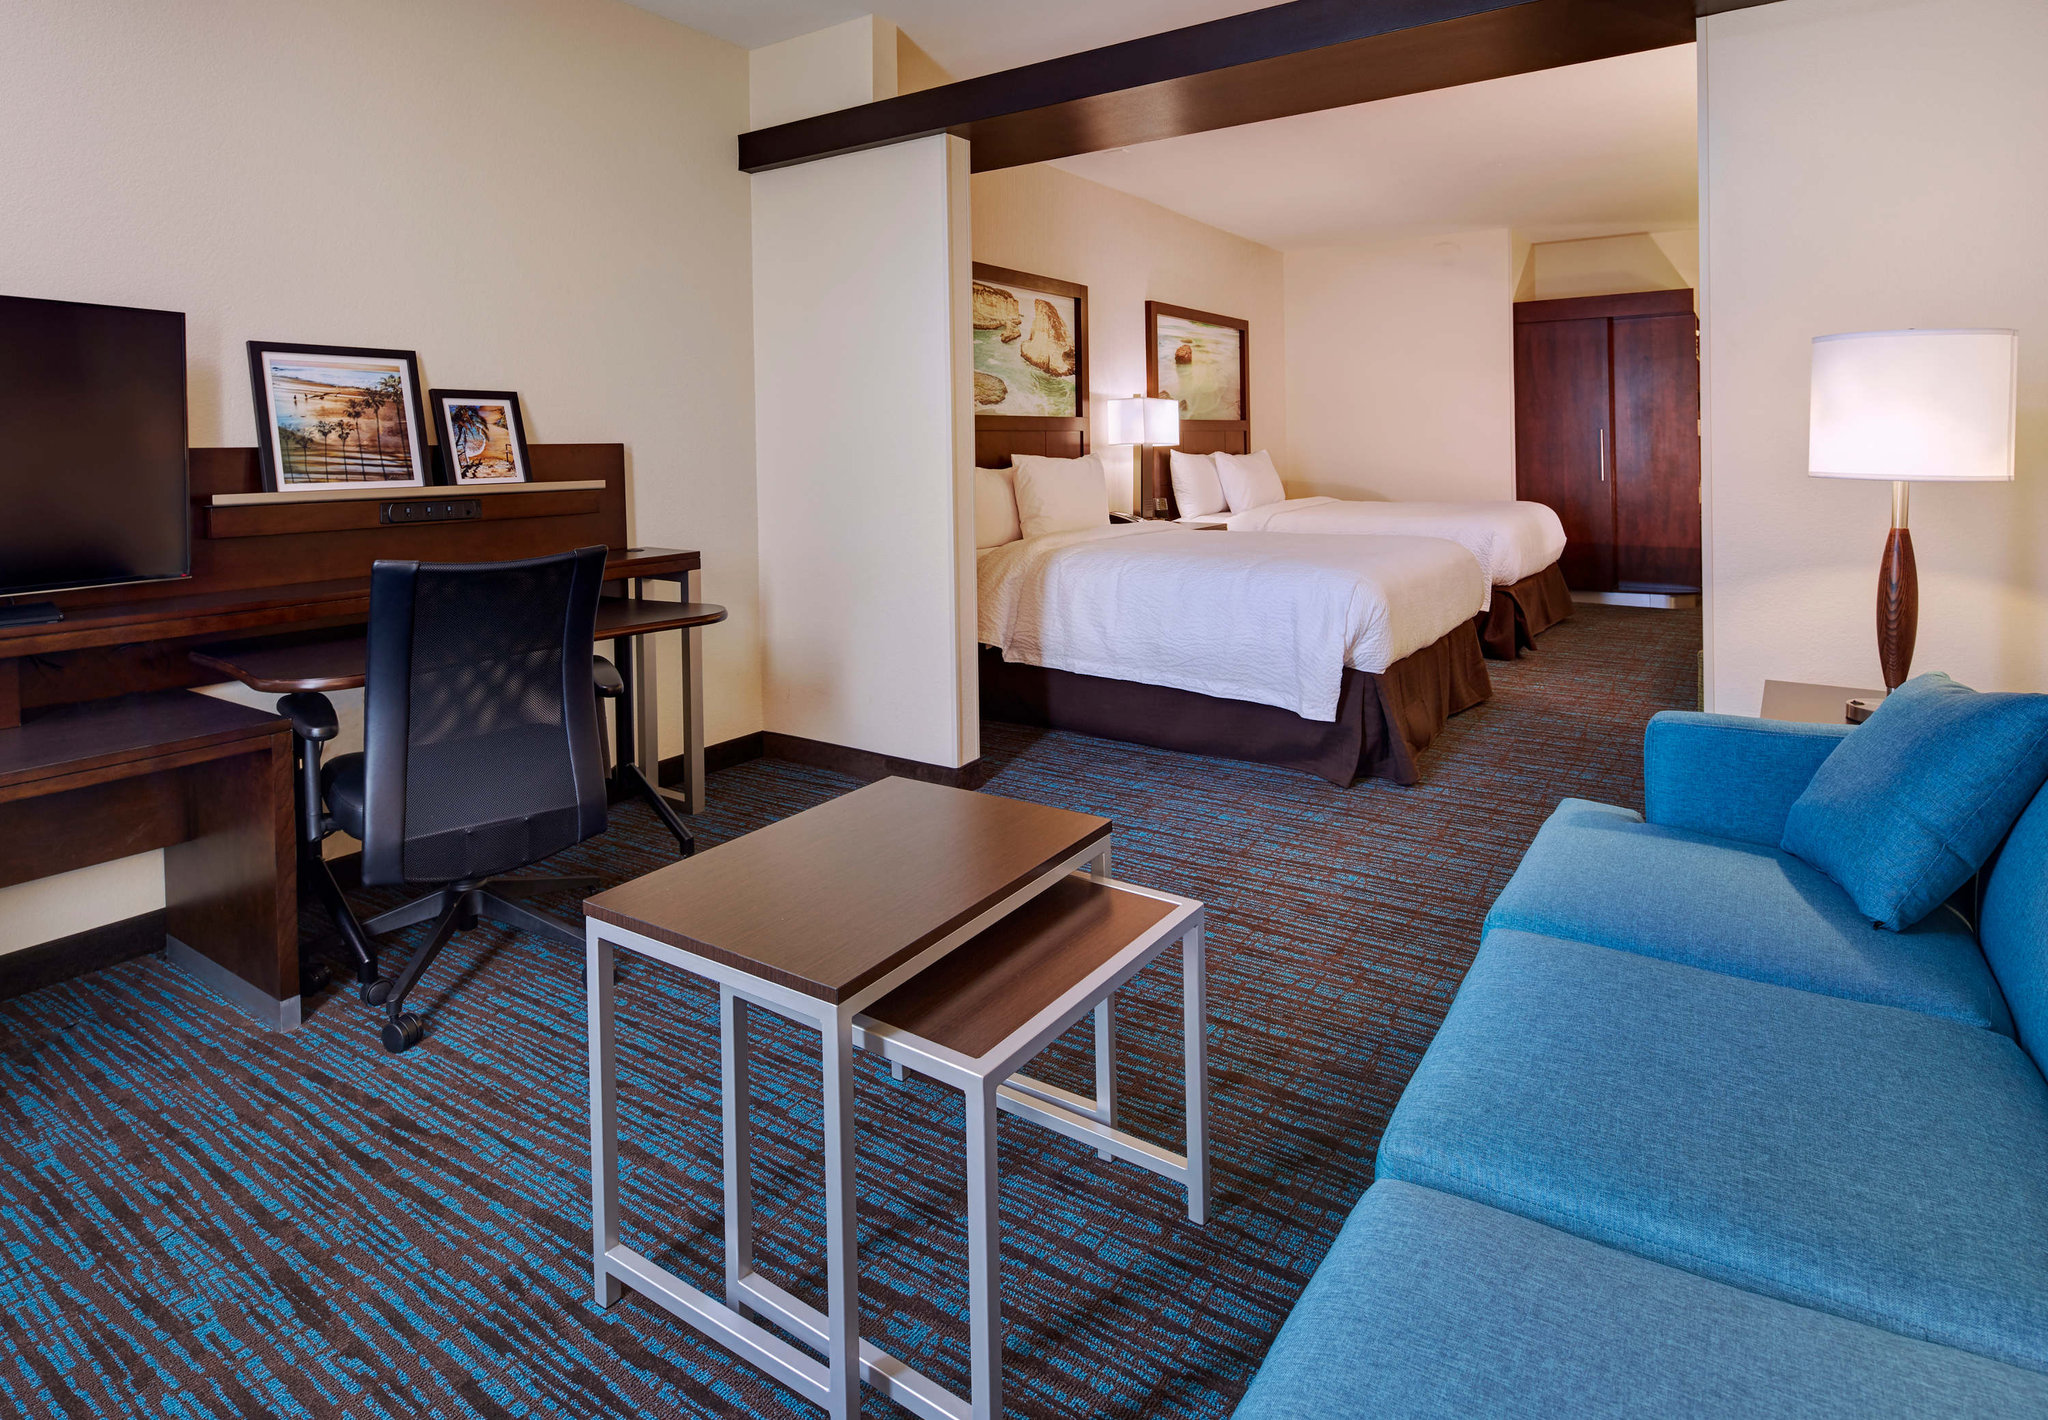 Fairfield Inn & Suites San Diego Carlsbad